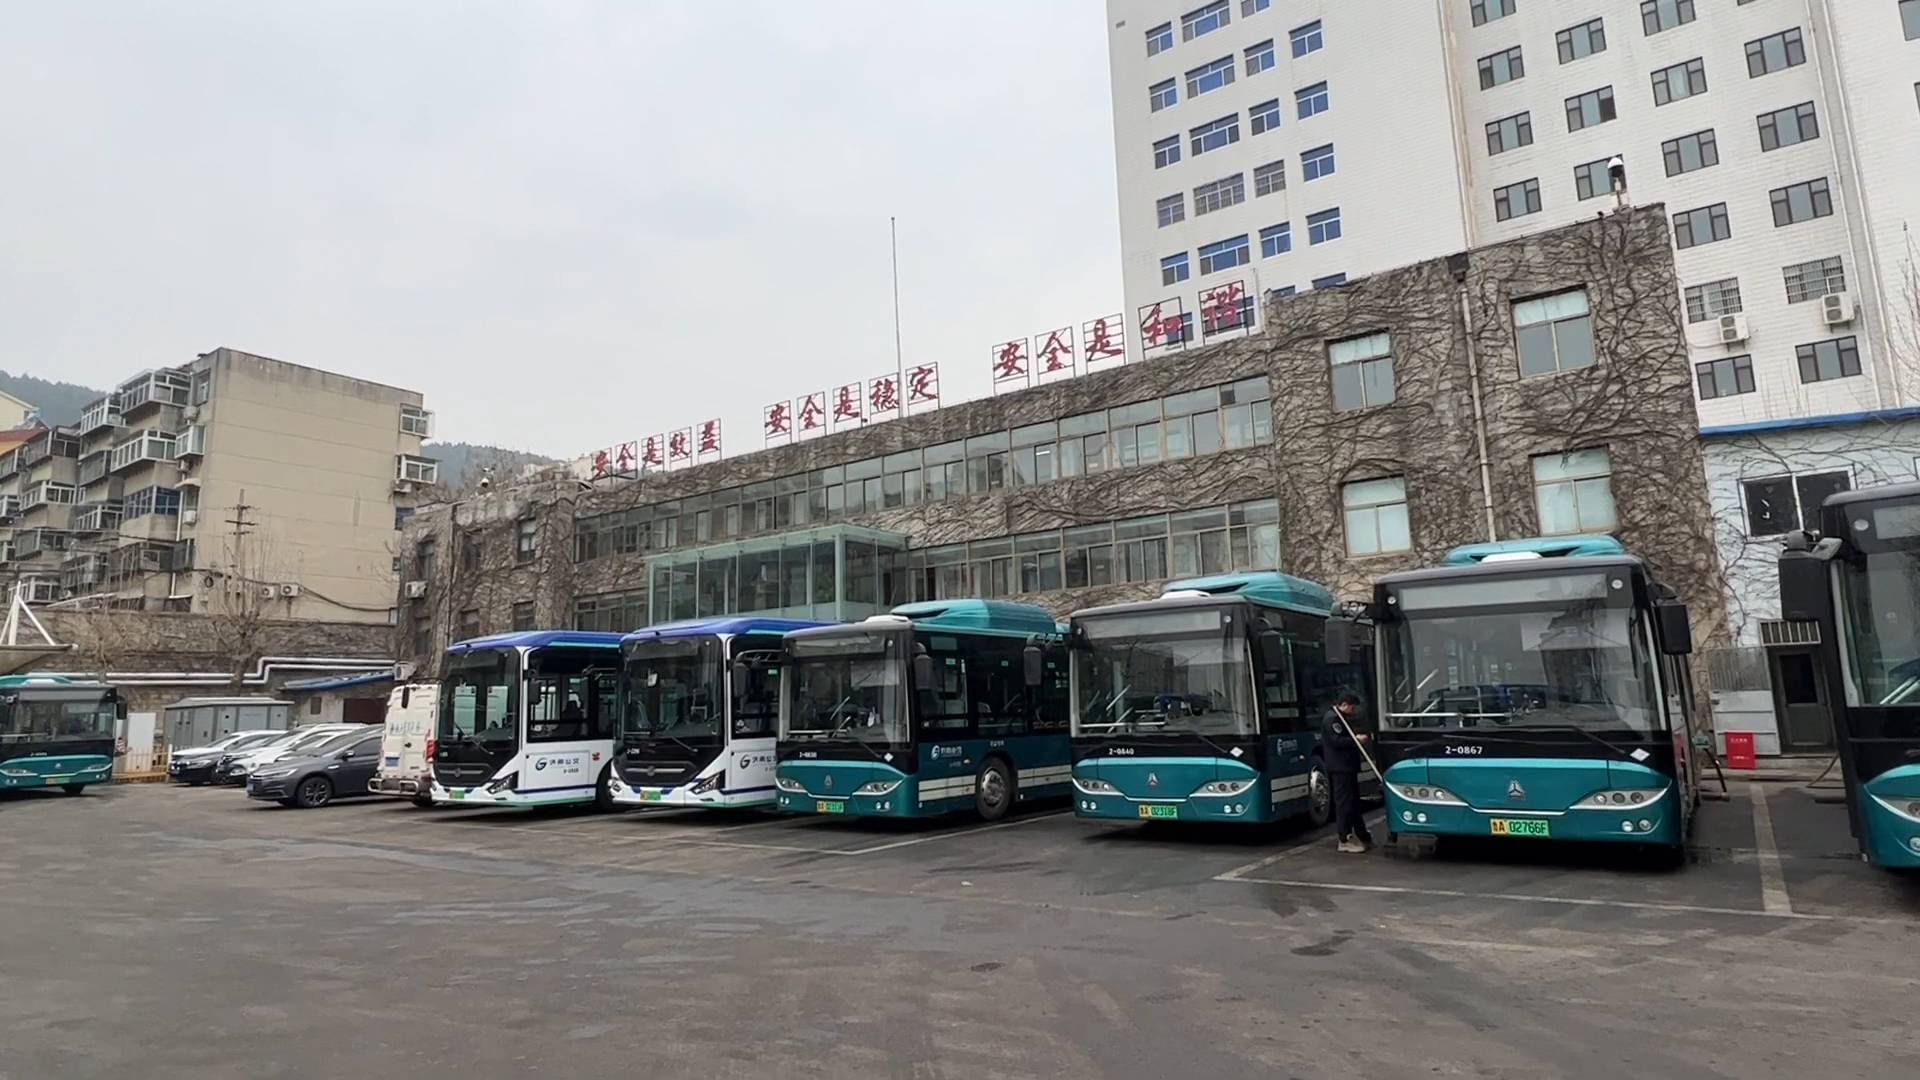 济南禁止携带各类电动车及电动车电池上公交 记者探访新规执行首日情况